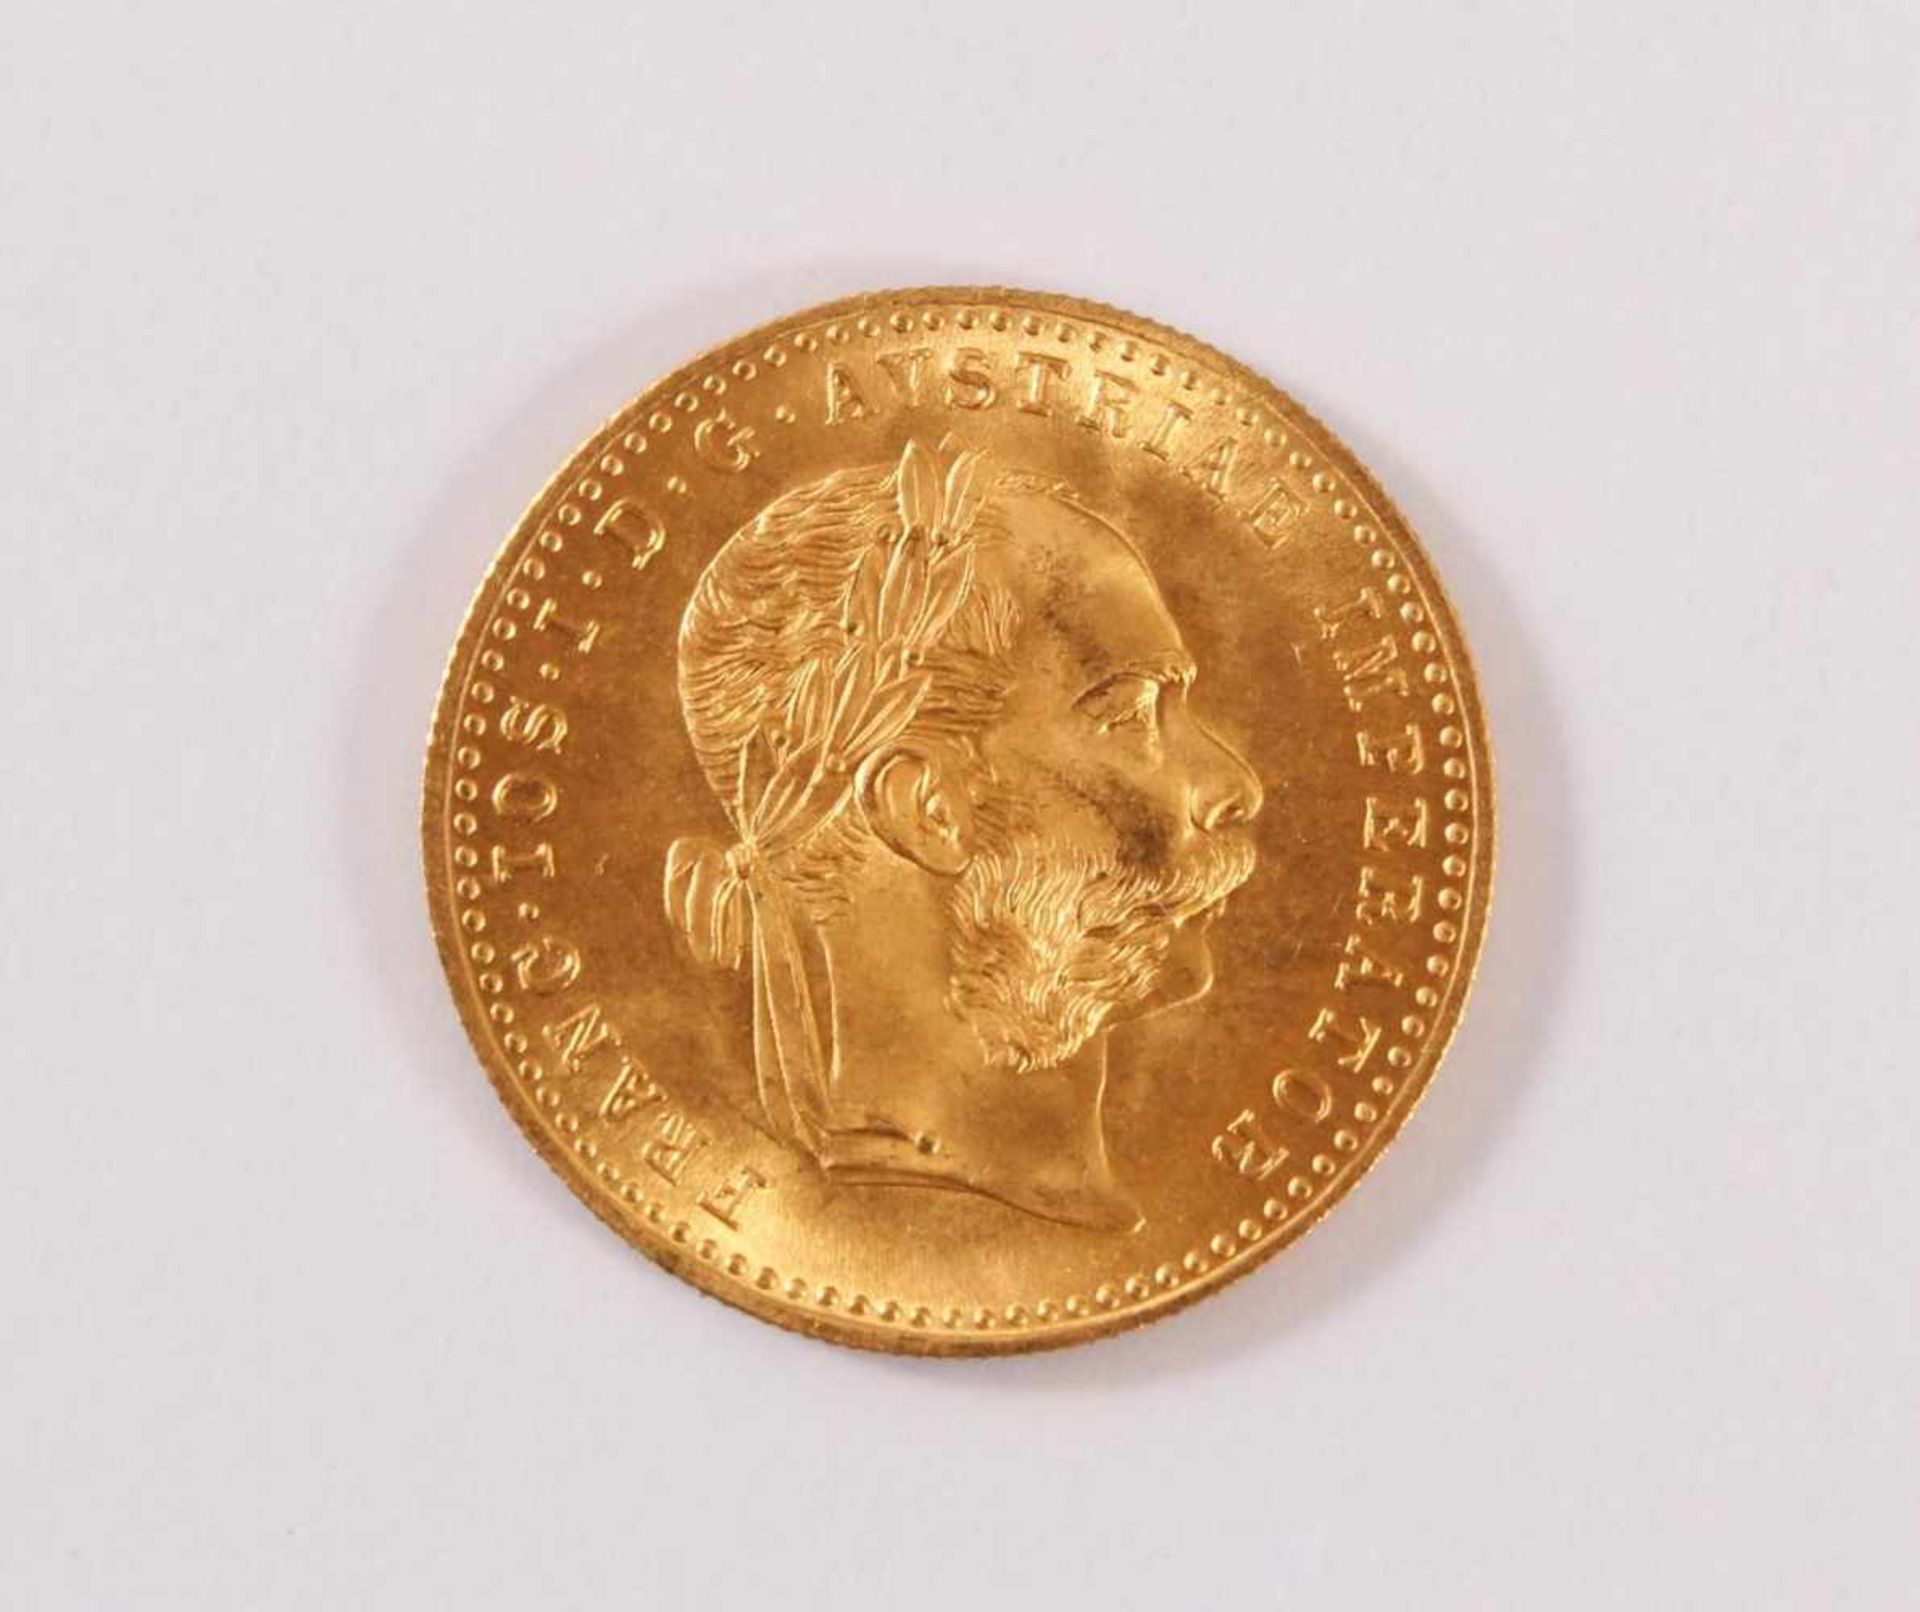 1915 Österreich 1 Ducat Franz Joseph I.3,4 g, 986/1000 Gold.- - -20.00 % buyer's premium on the